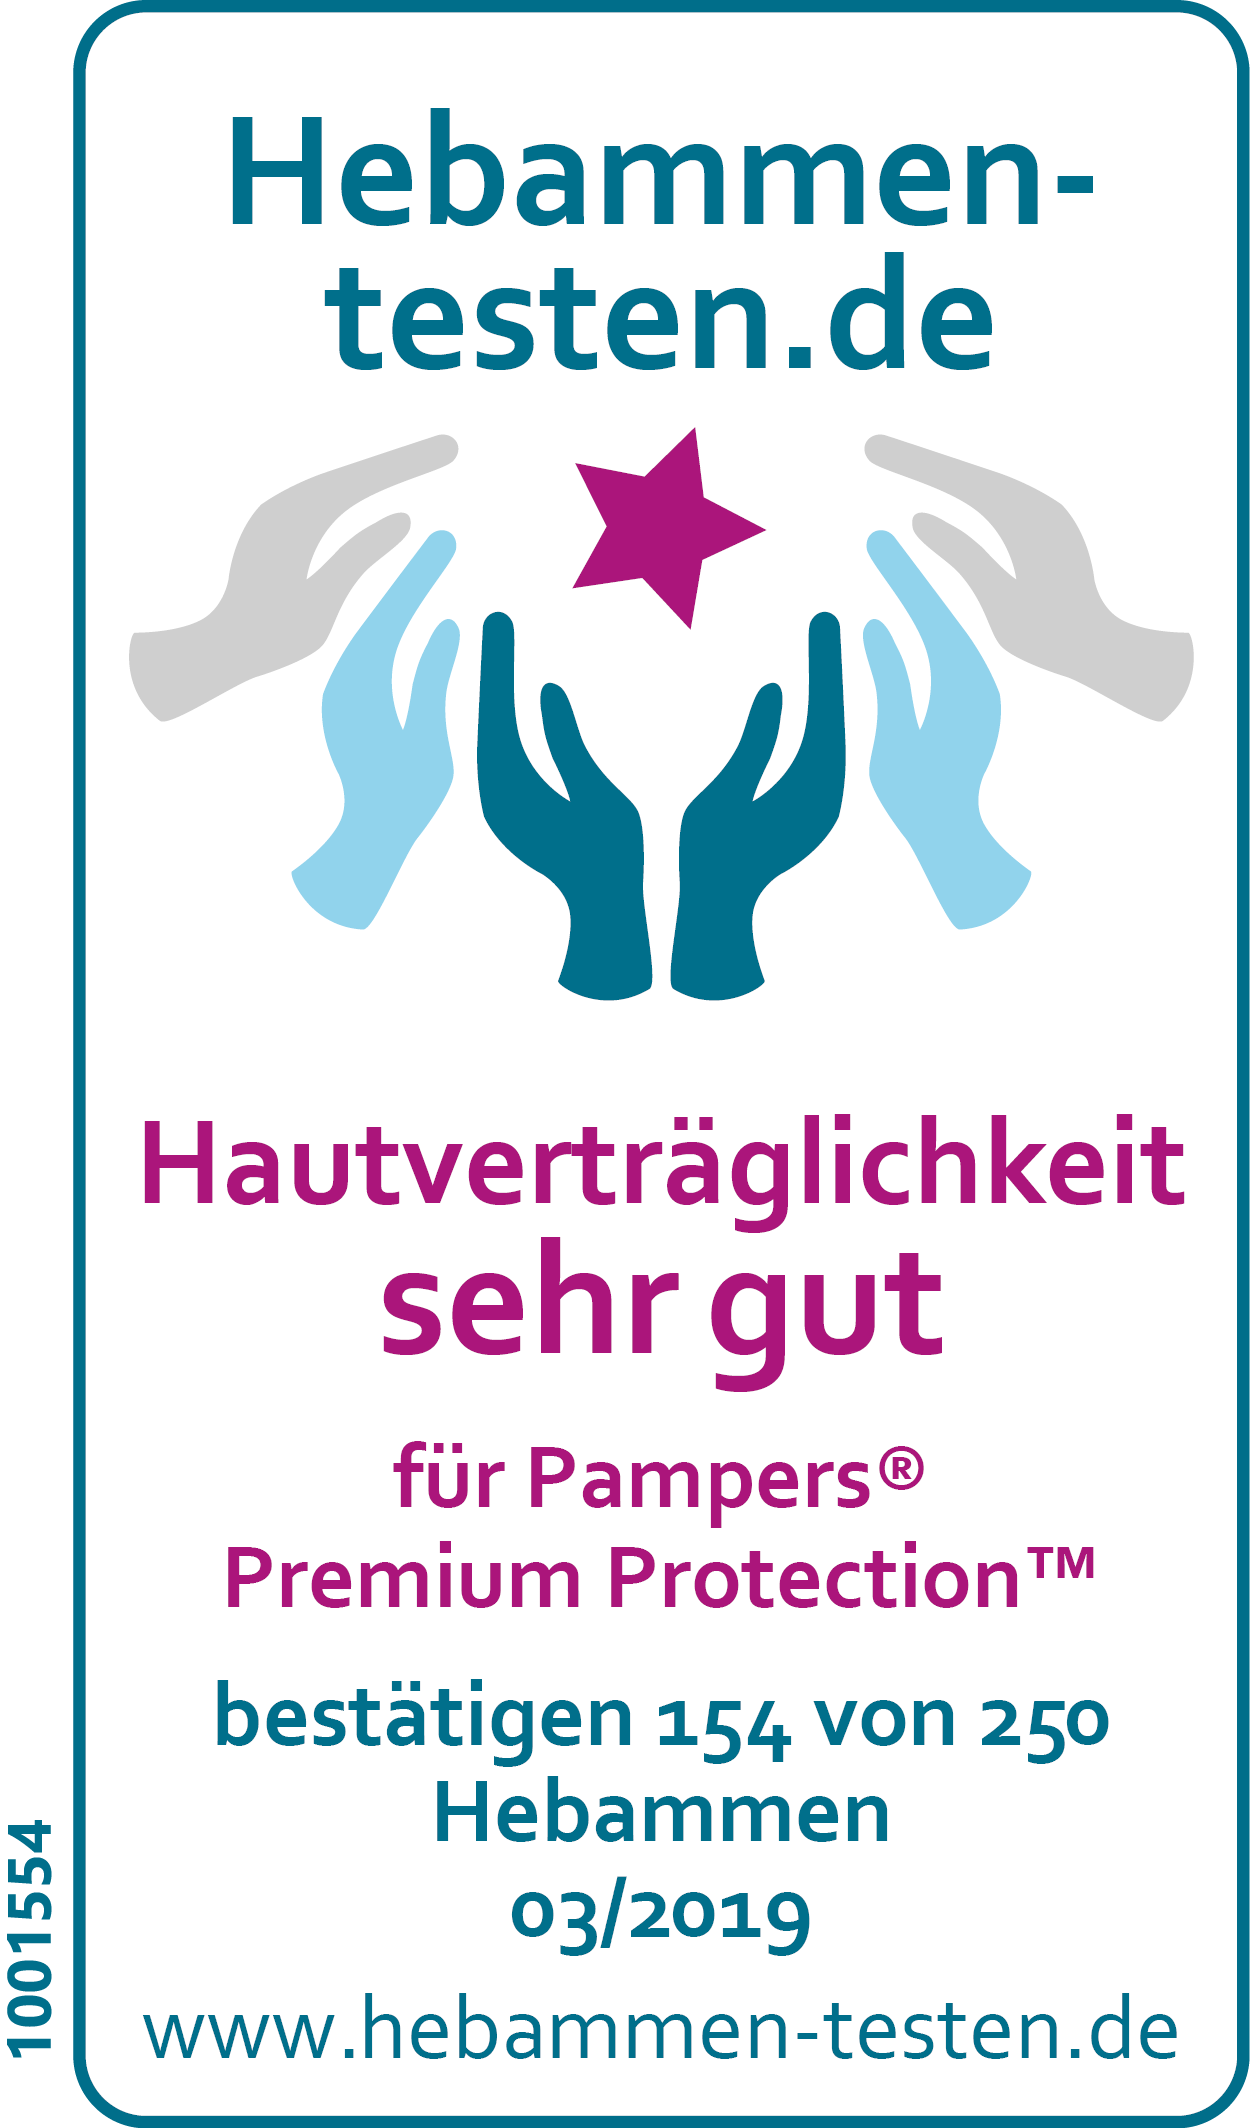 Hebammen-testen.de Siegel für Pampers Premium Protection Hautverträglichkeit sehr gut bestätigen 154 von 250 Hebammen in einem Test vom März 2019.